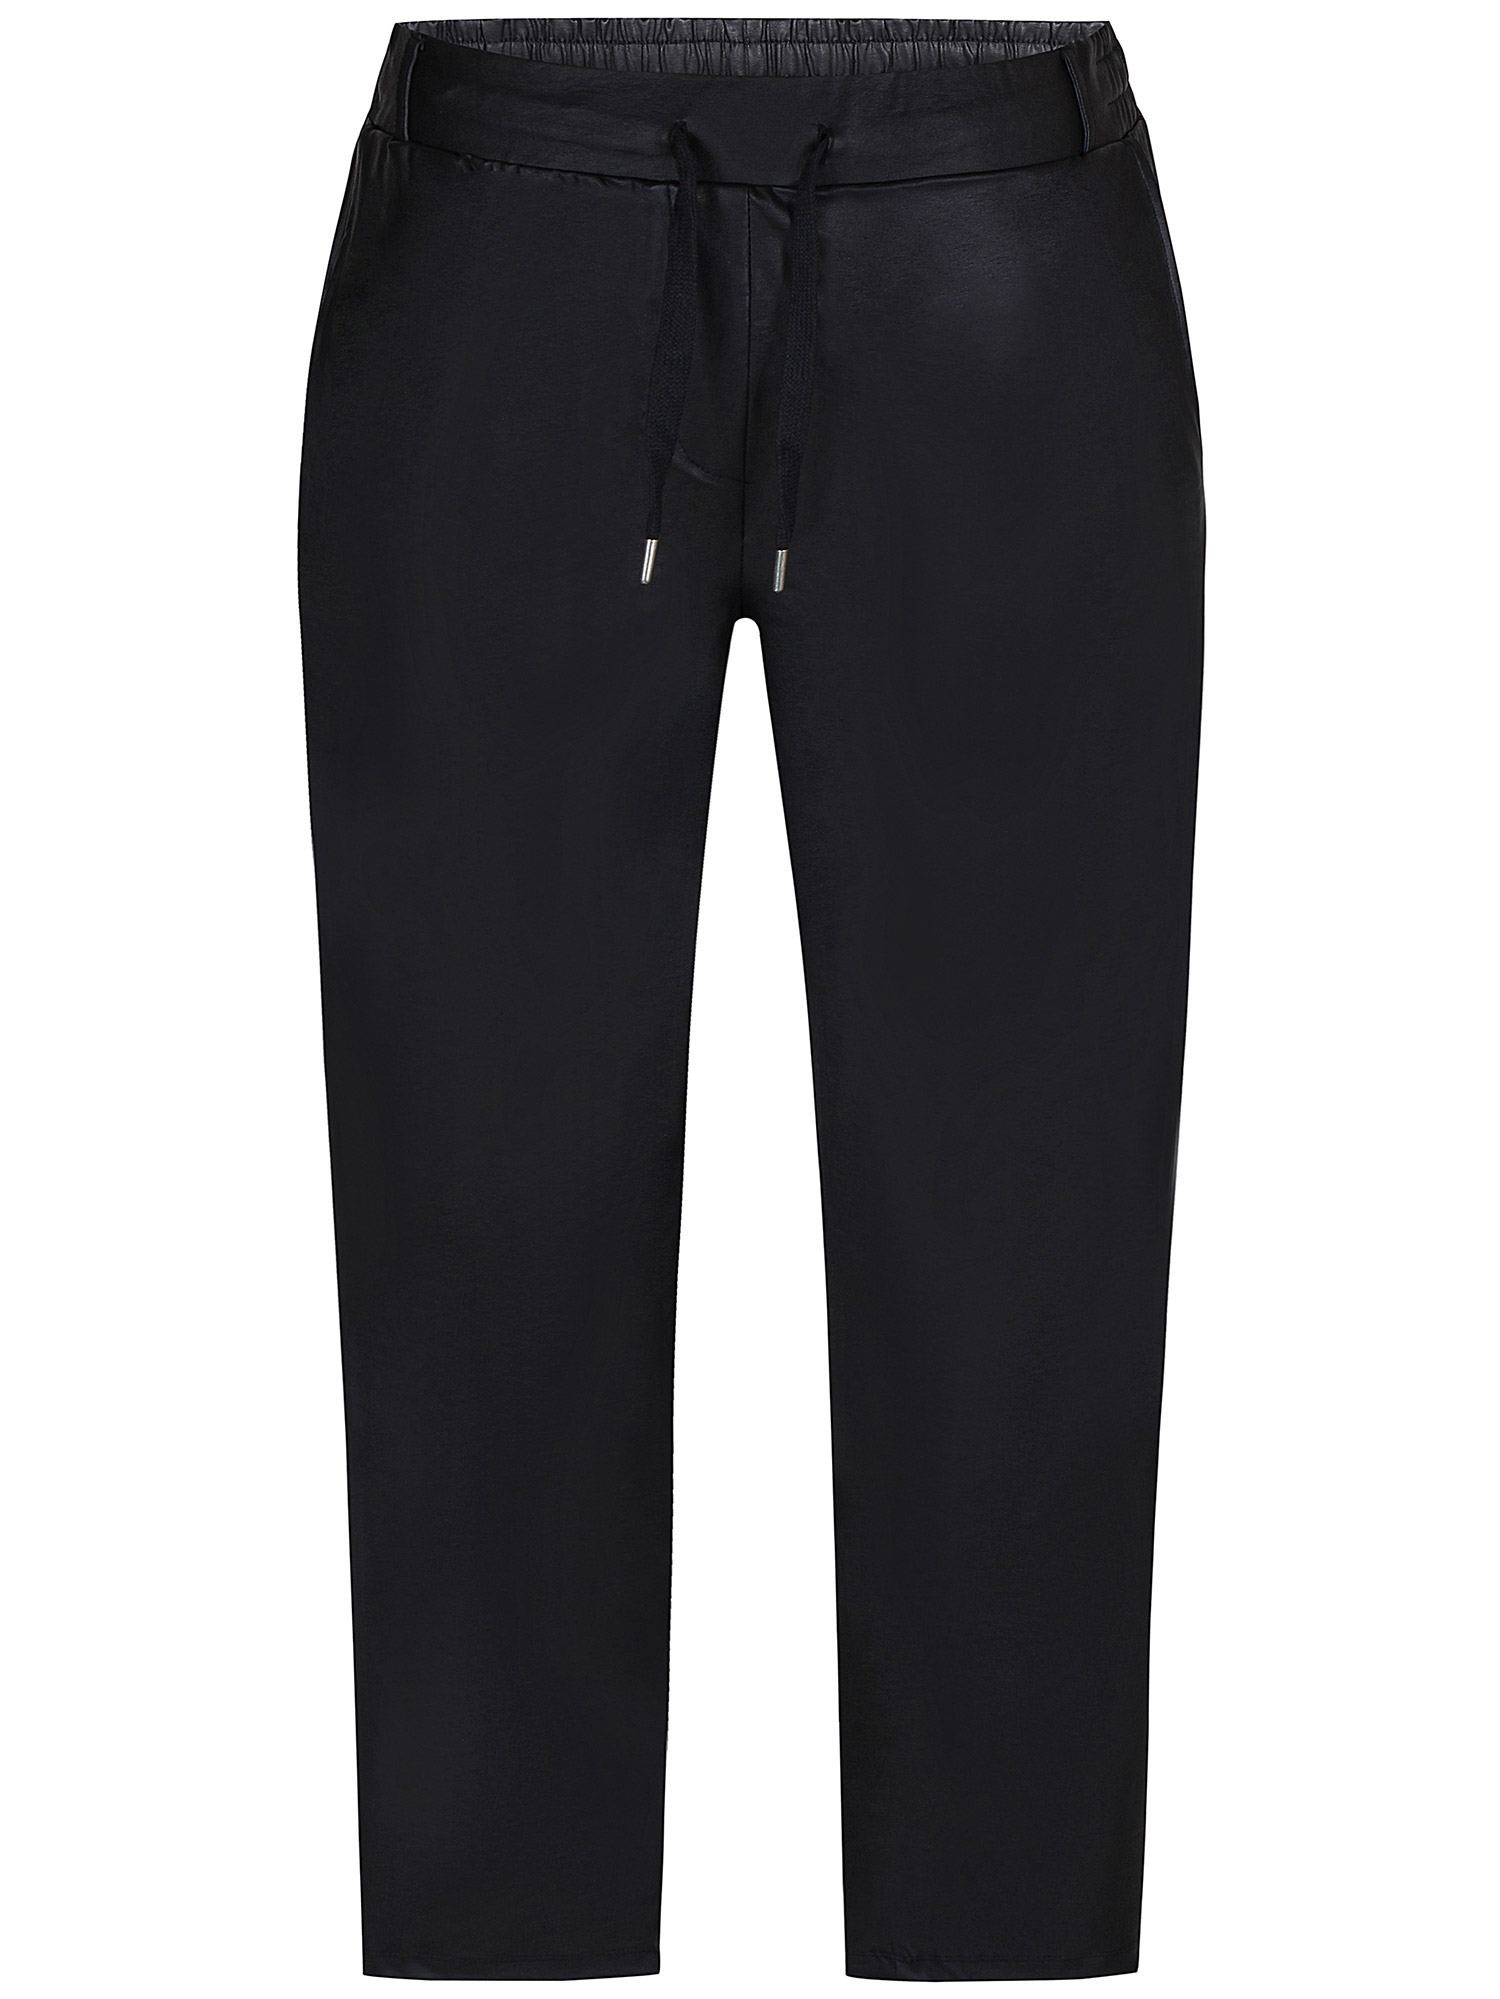 CALLIE - Sorte bukser i læderlook med lommer fra Zhenzi